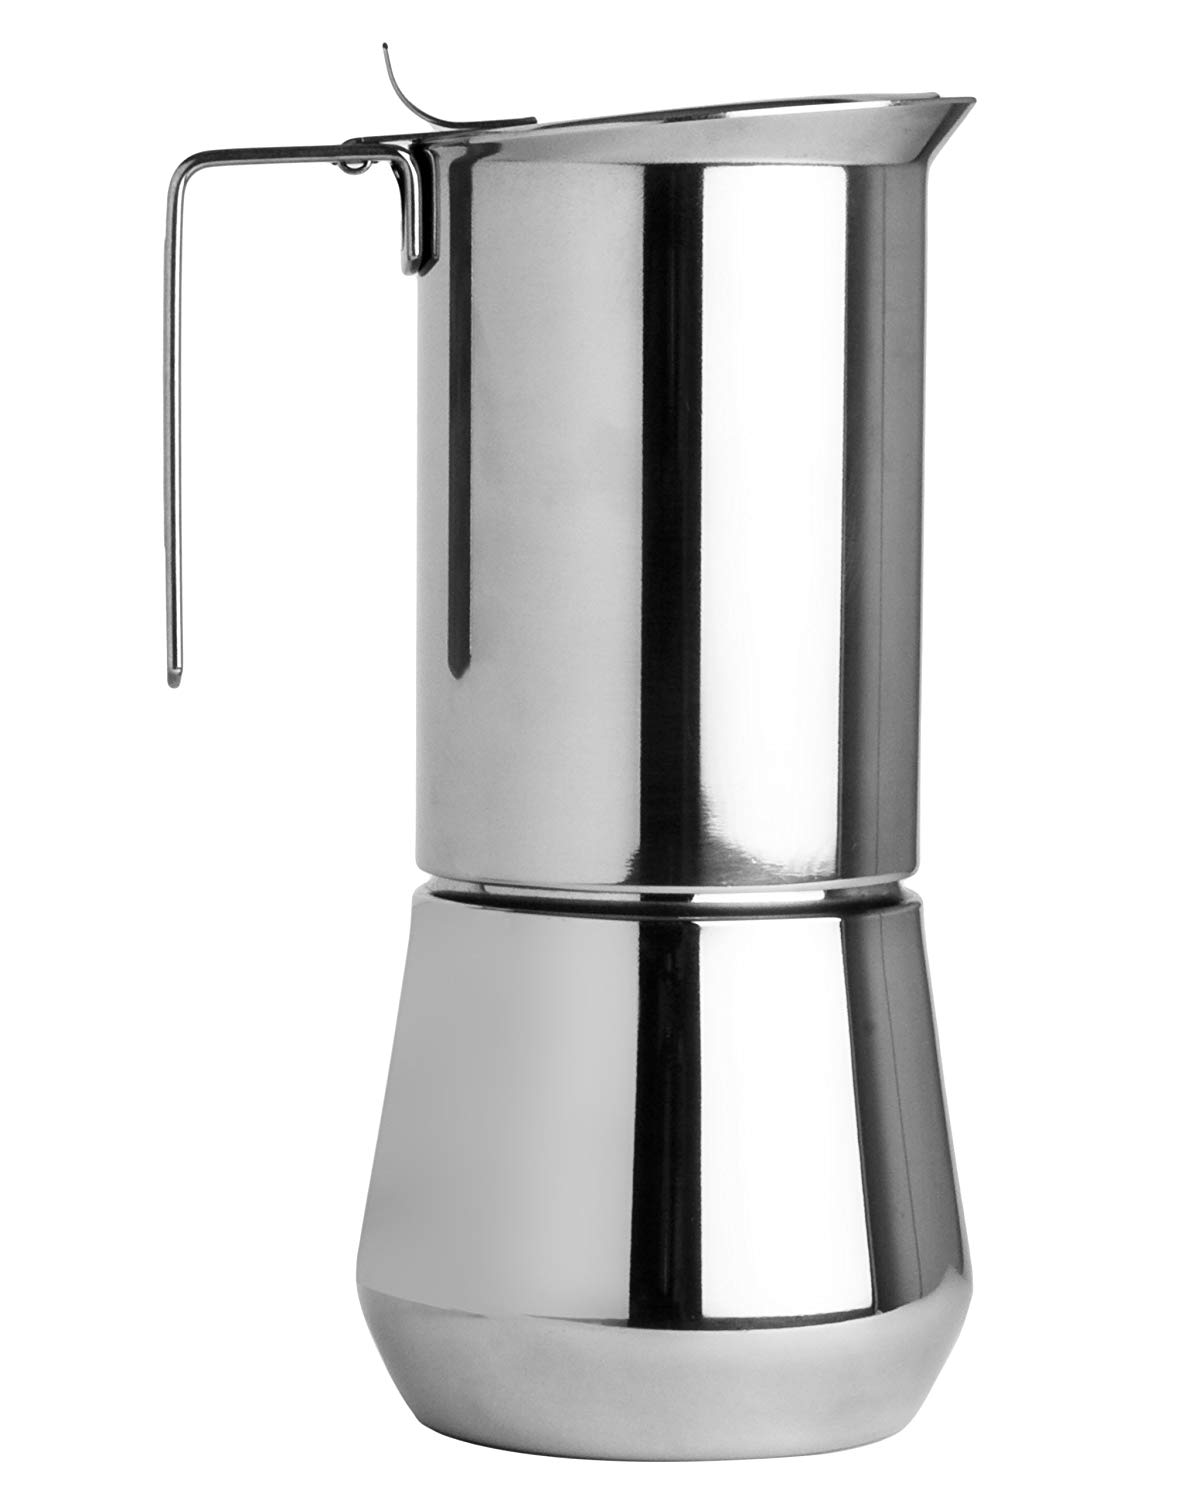 Ilsa 0090 009 Turbo Express Espresso Maker For 9 Cups